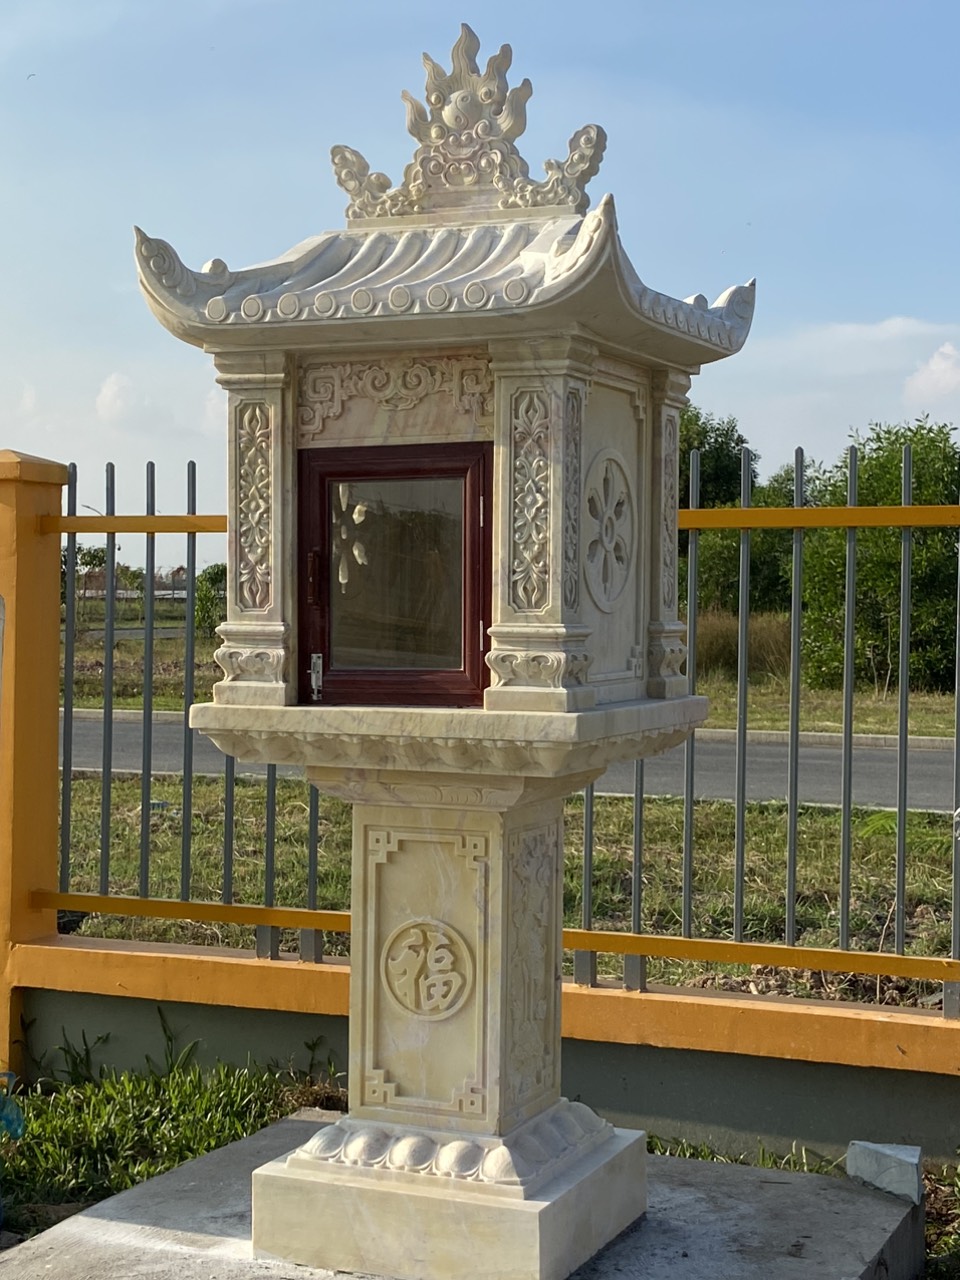 KHóm thờ đá - Mẫu khóm thờ bằng đá nghĩa trang , lăng mộ bán Đồng Nai